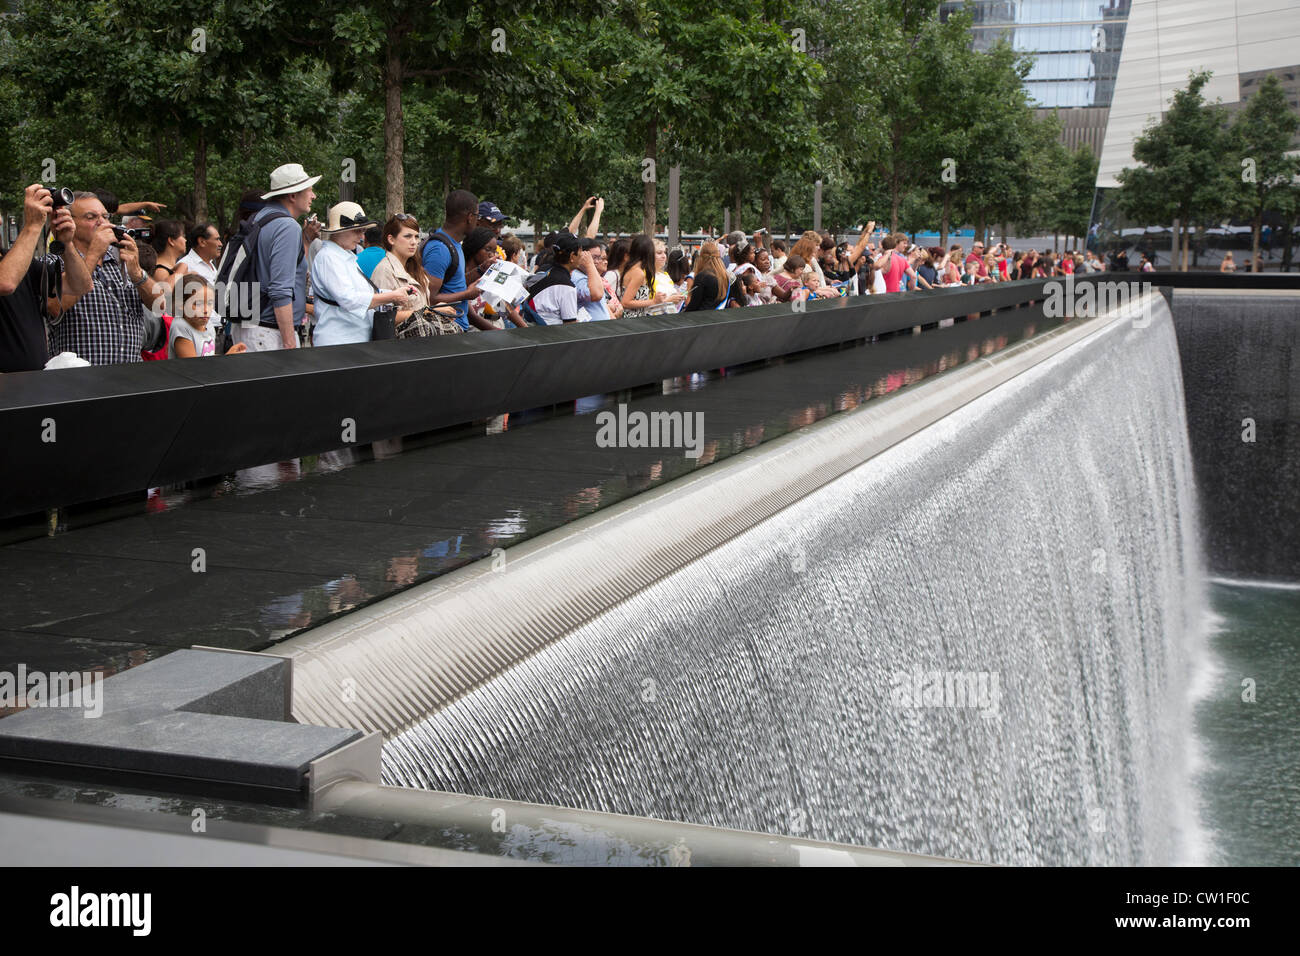 New York, NY - le 9/11 Memorial, commémorant les attentats du 11 septembre 2001 sur le World Trade Center et le Pentagone. Banque D'Images